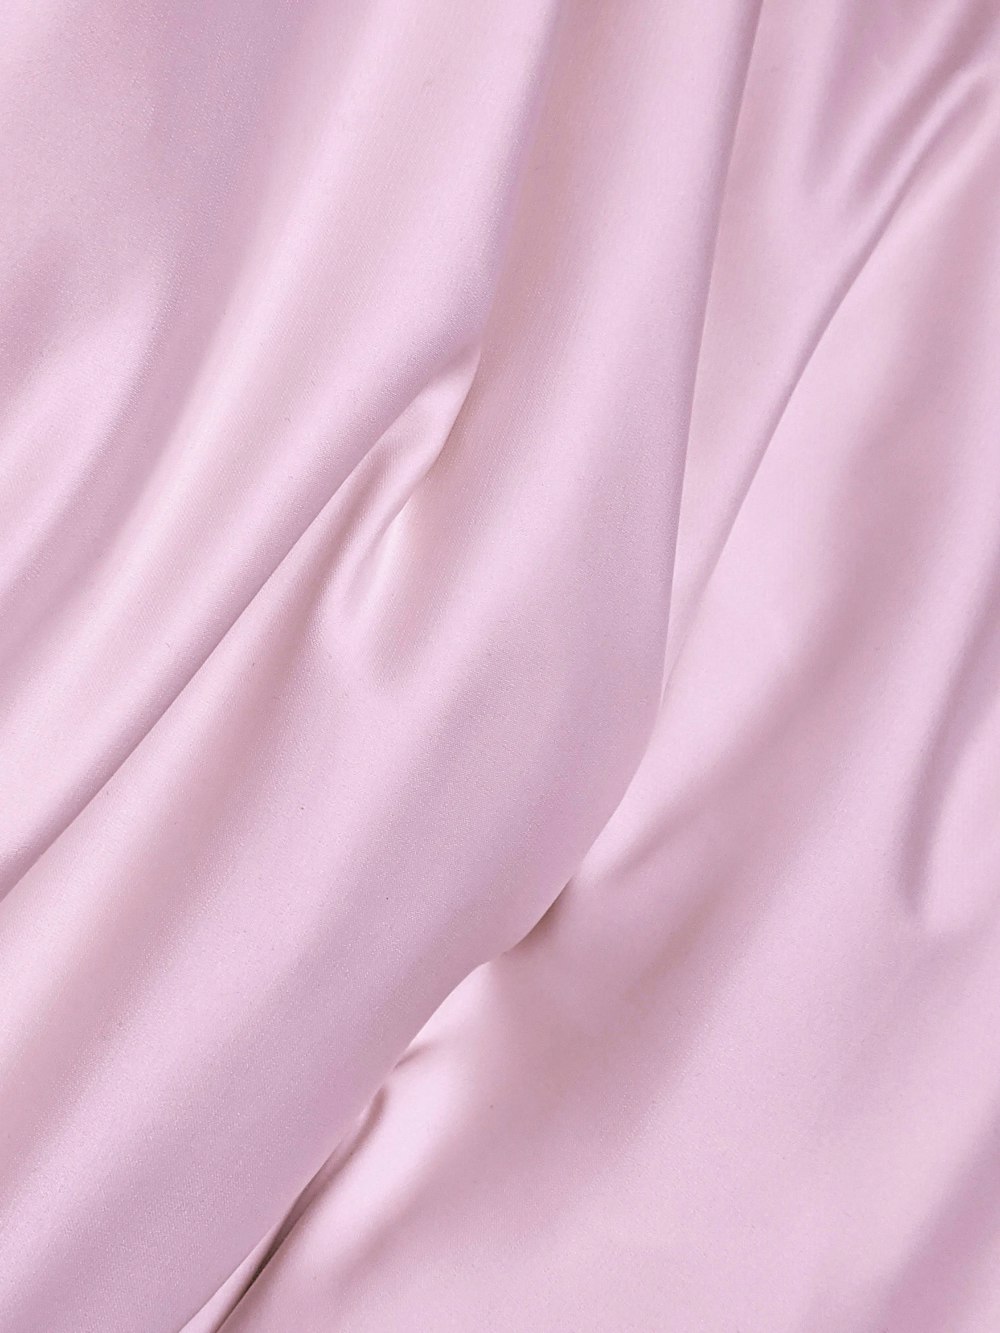 rosa Textil in Nahaufnahme